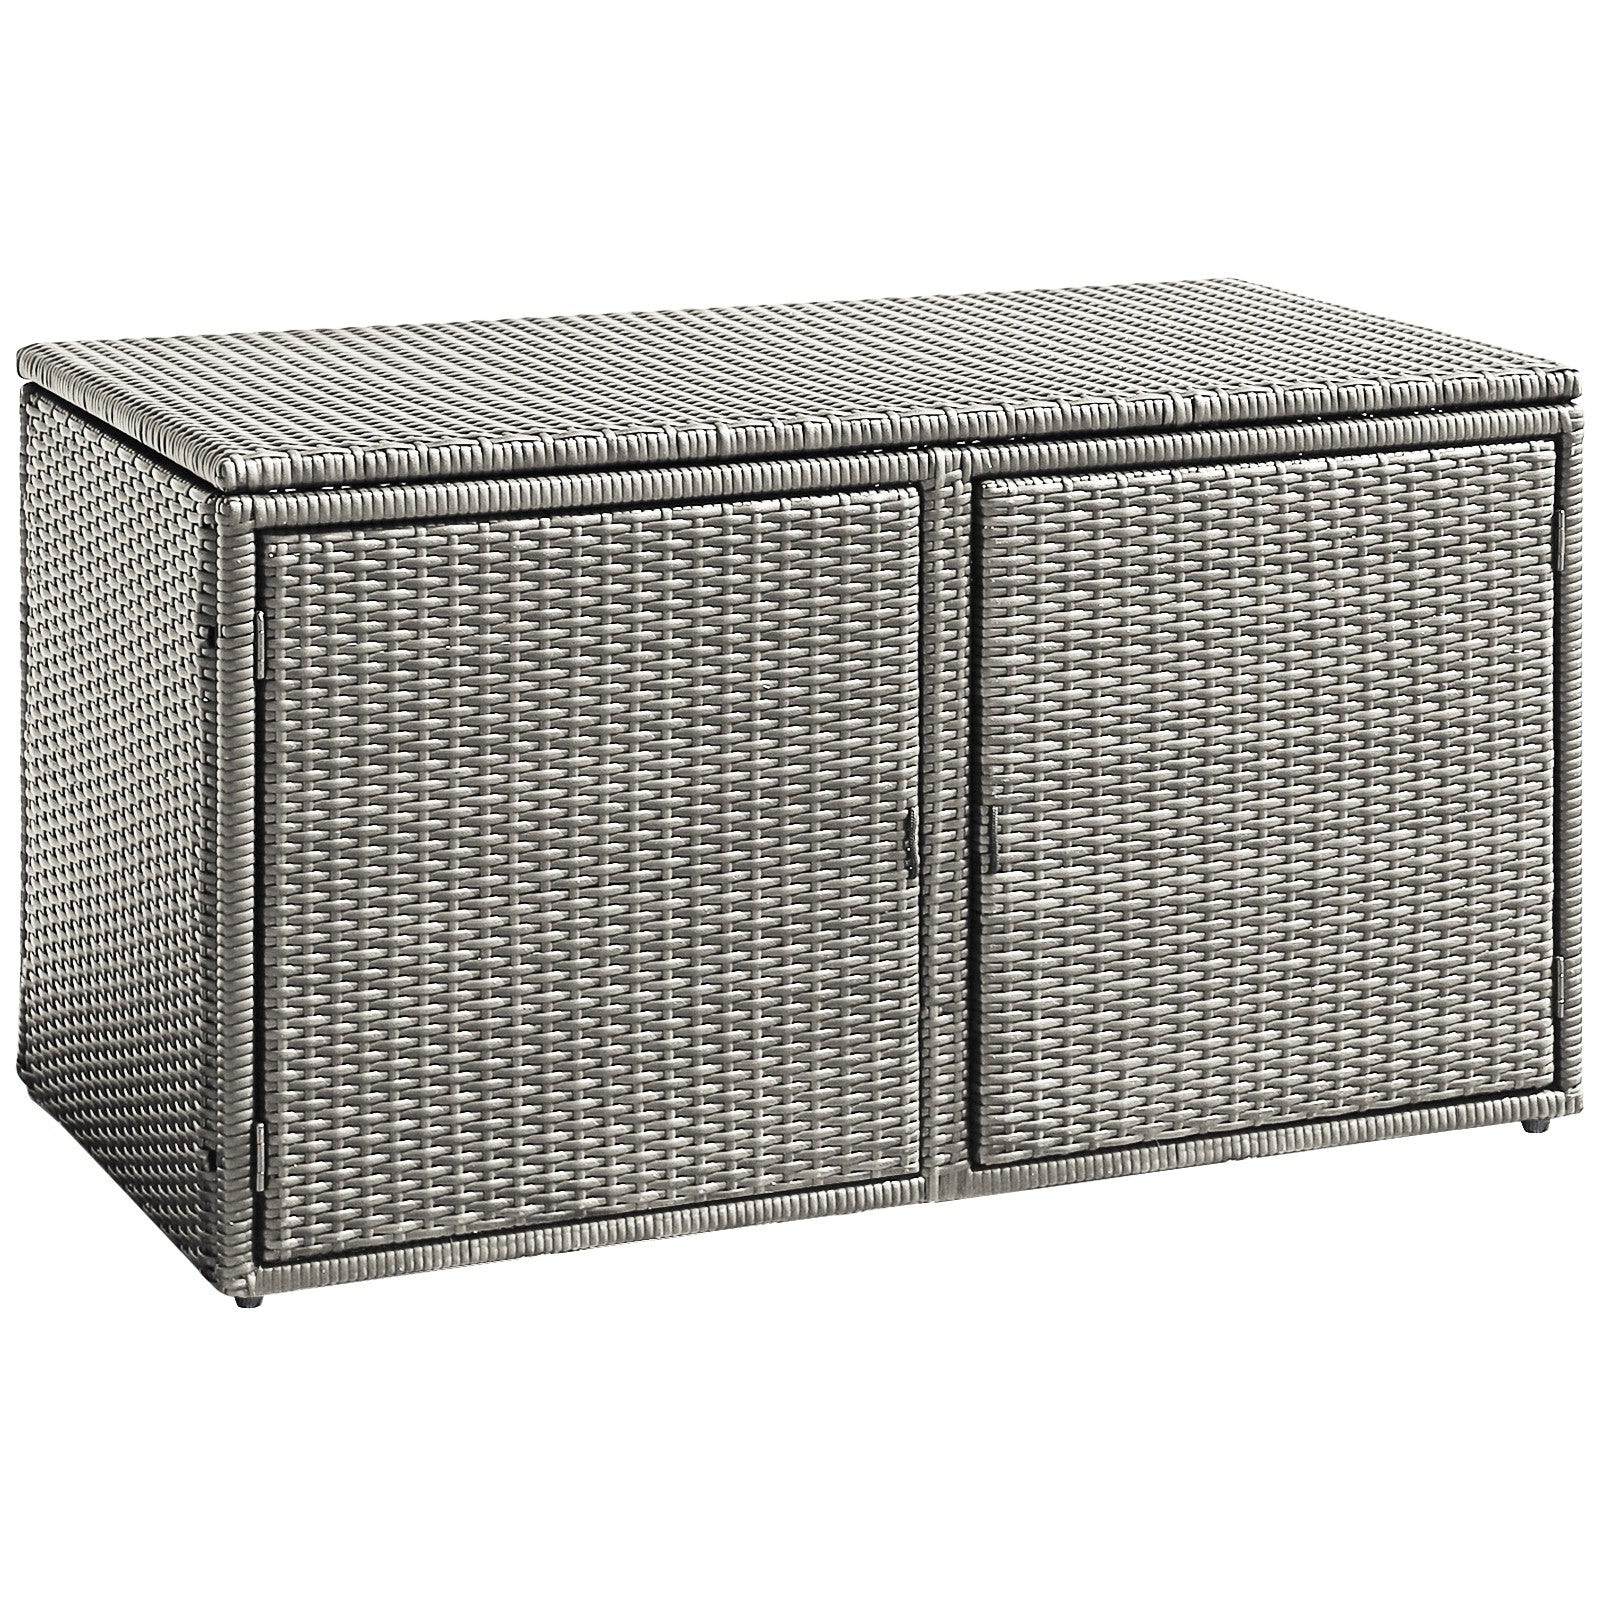 Rattan Deck Box Outdoor&Indoor 88 Gallon Wicker Storage Bench W/Separate Storage Shelf